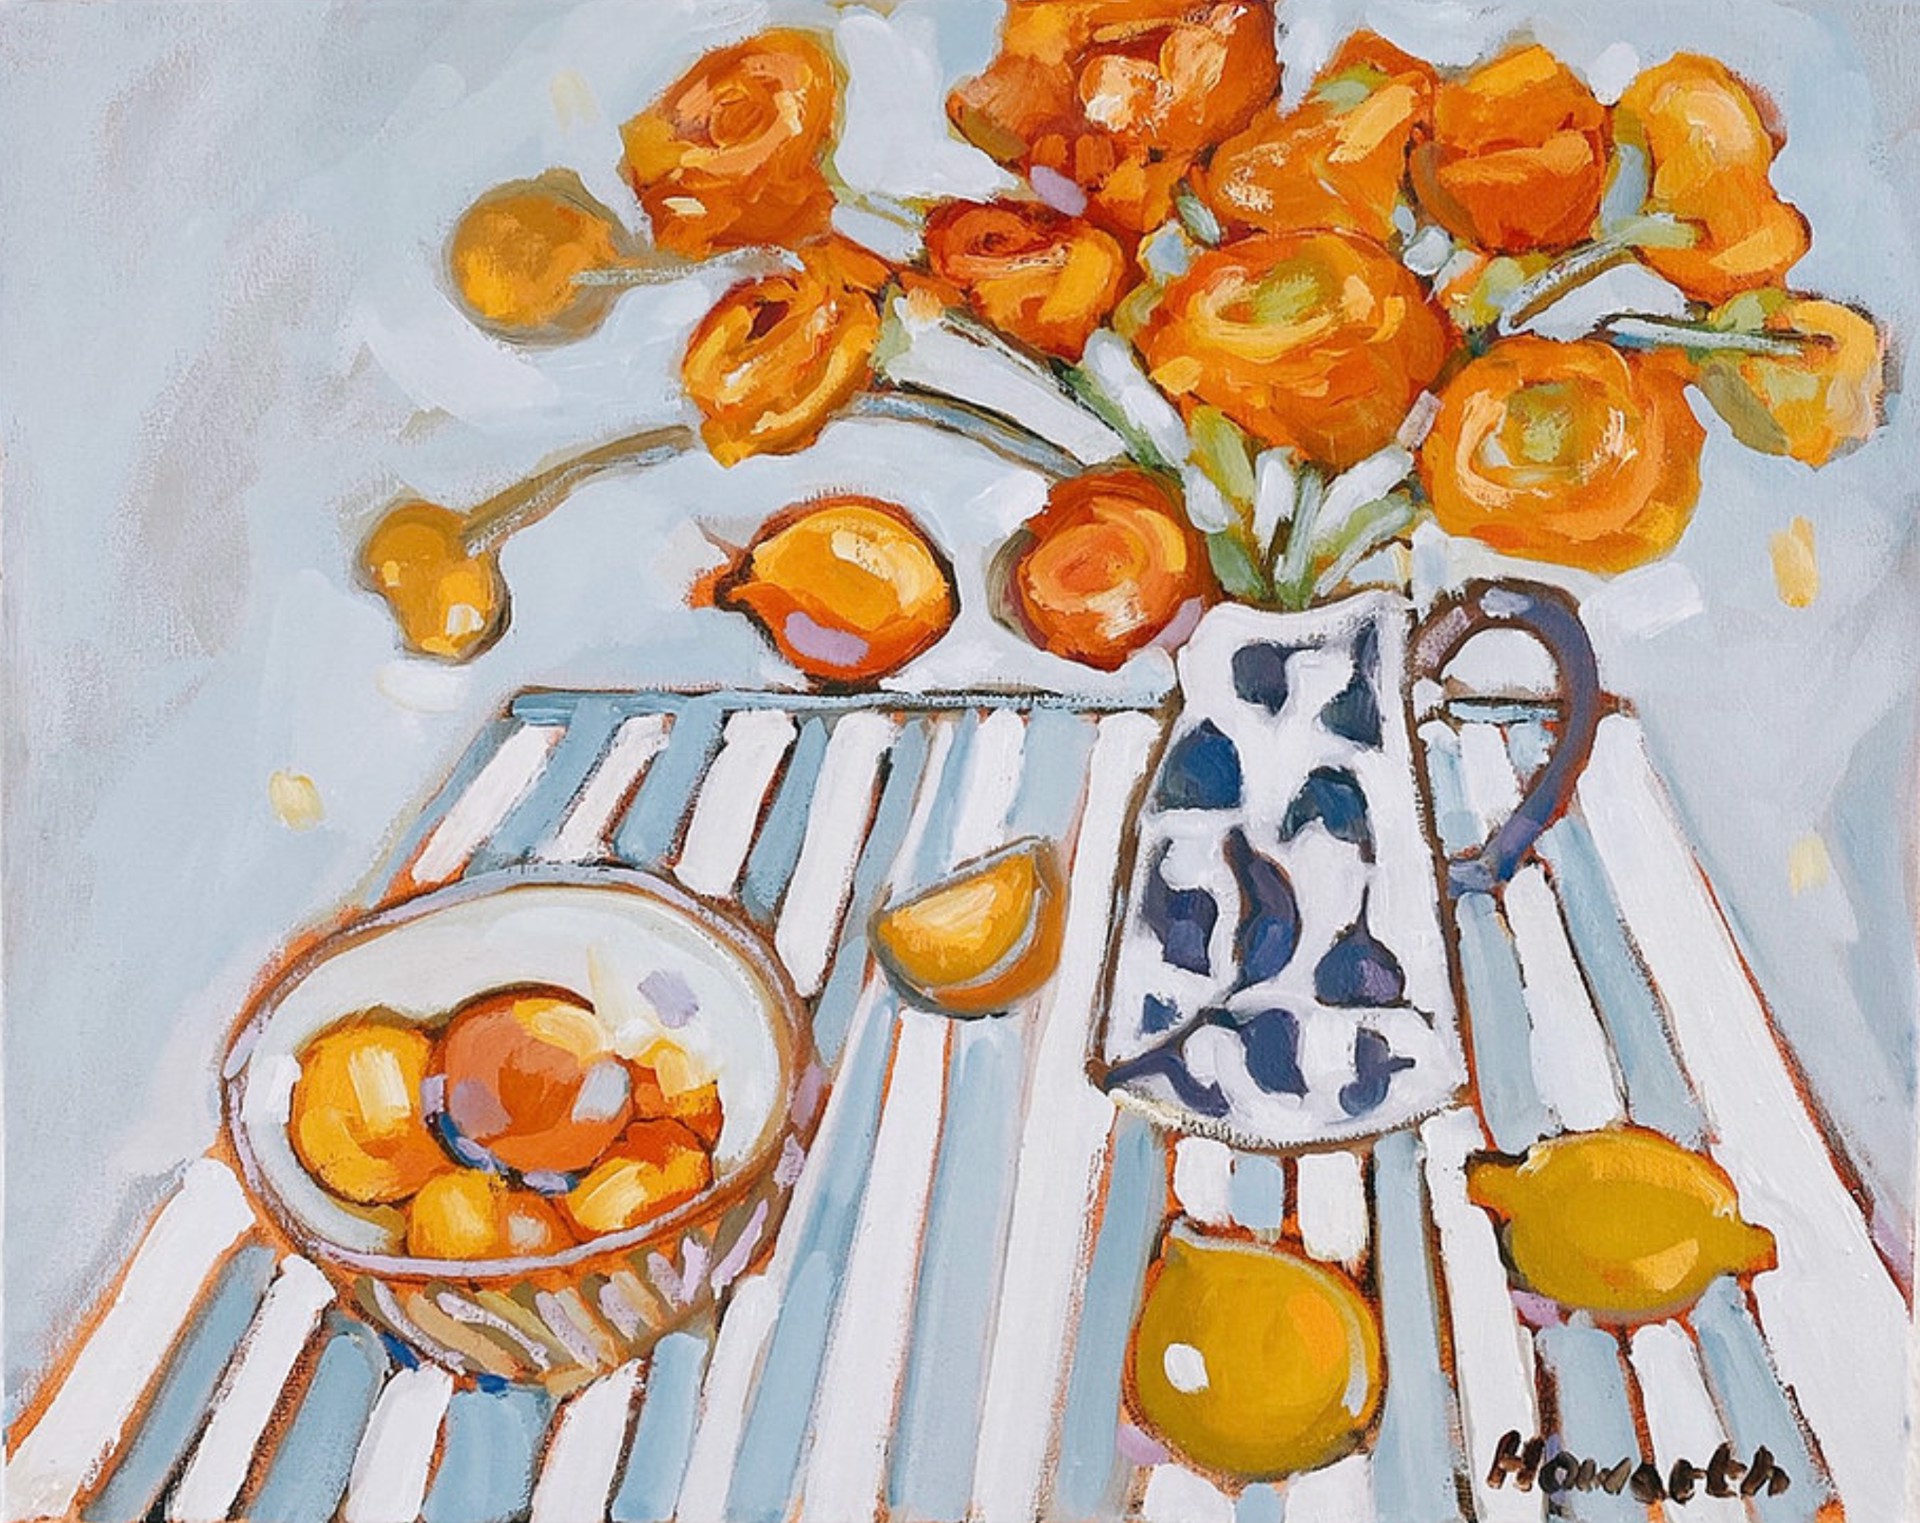 Marmalade Table by Katrina Howarth